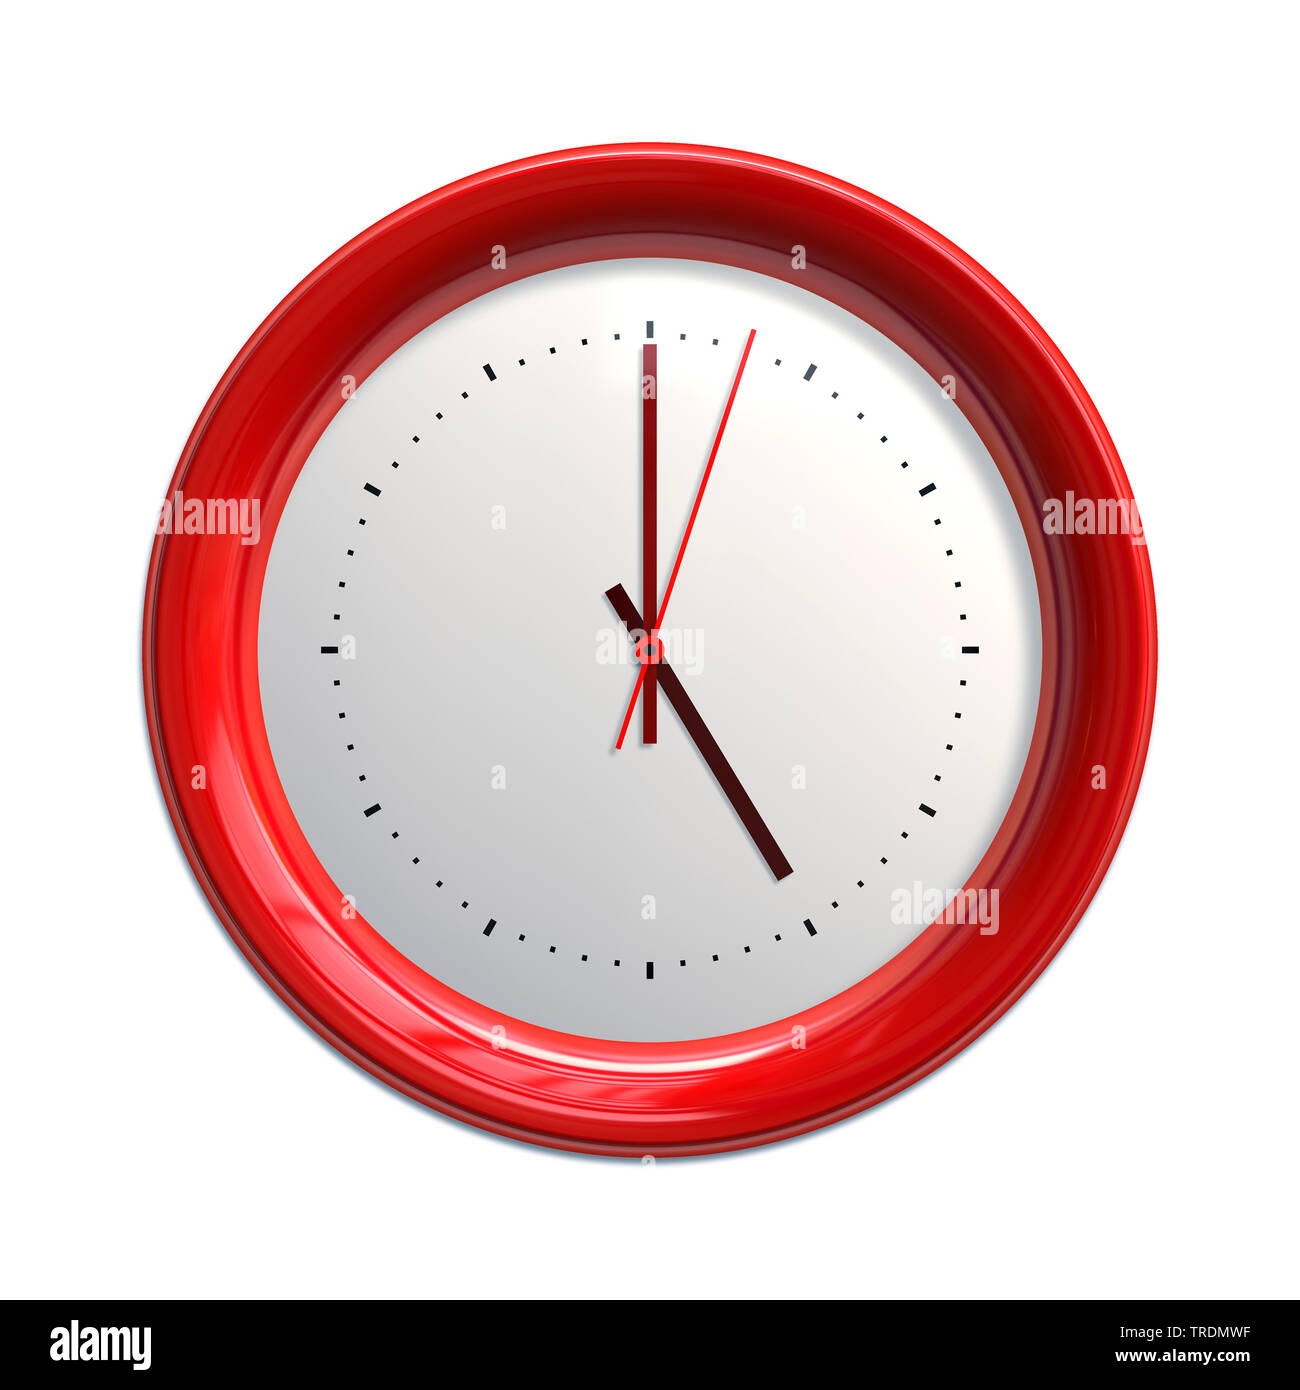 Orologio con bordo rosso che la visualizzazione di 5 pm, ora di chiusura Foto Stock